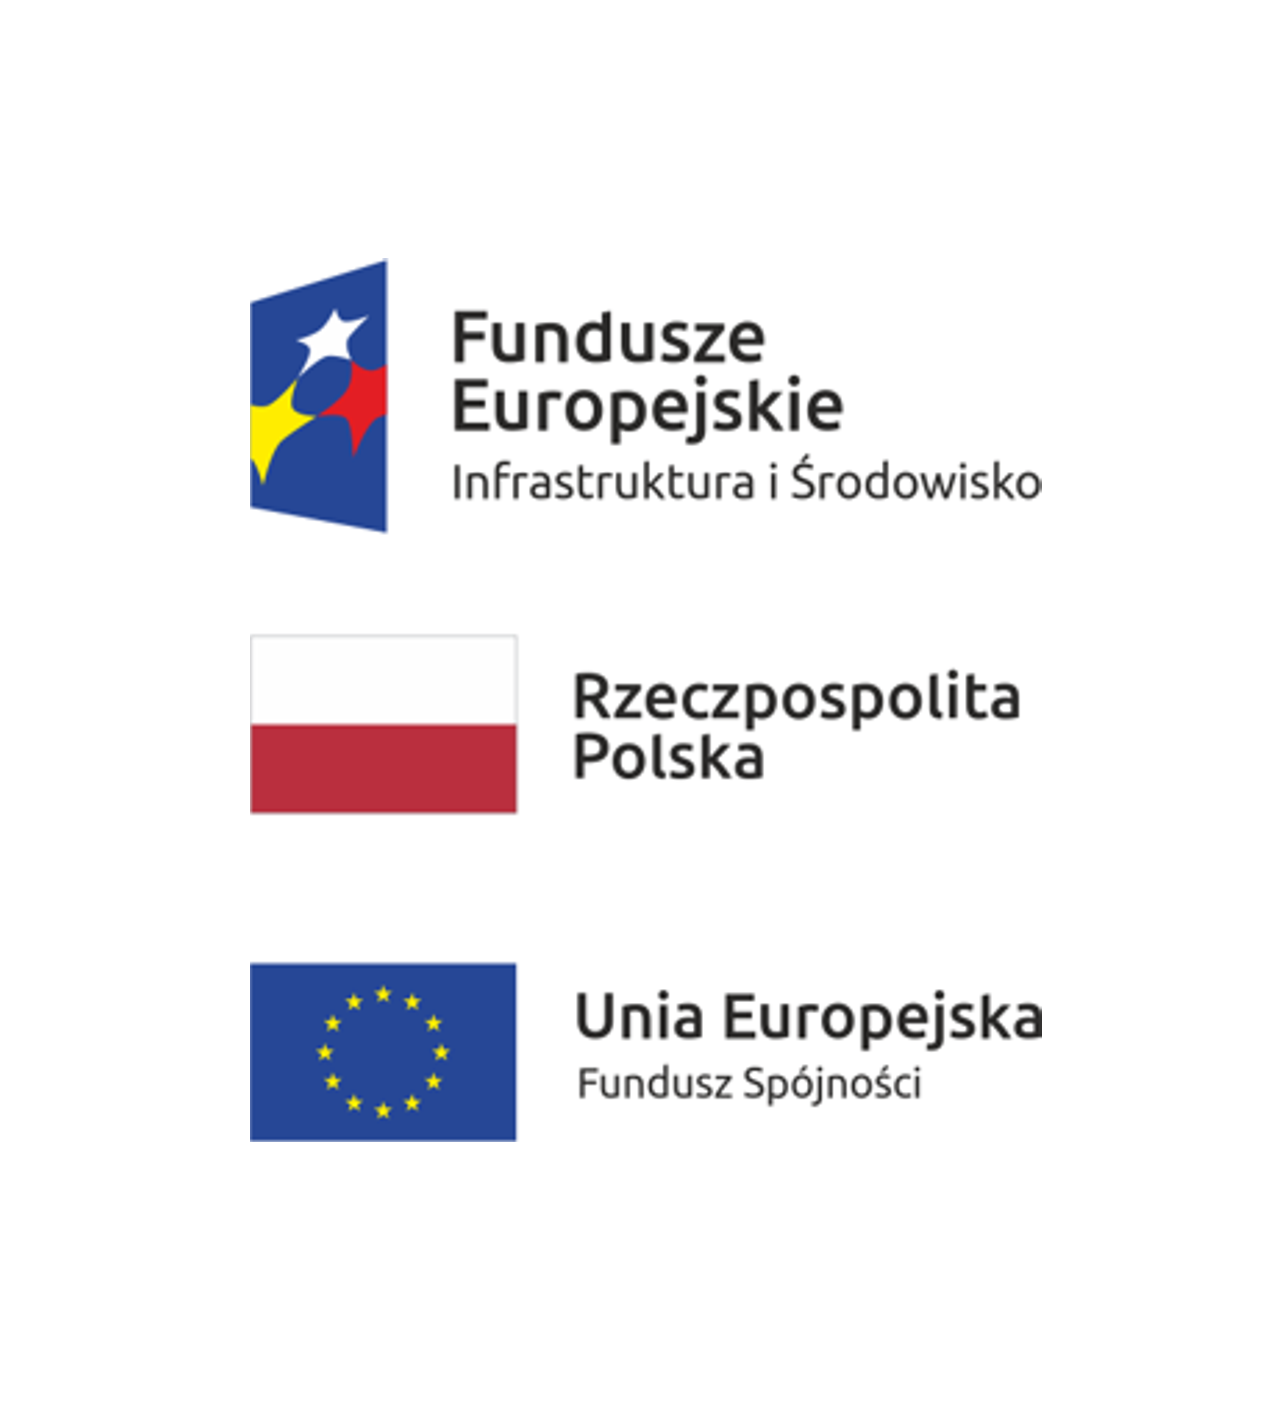 Logo Funduszy Europejskich, Flaga Polski, flaga Uni Europejskiej